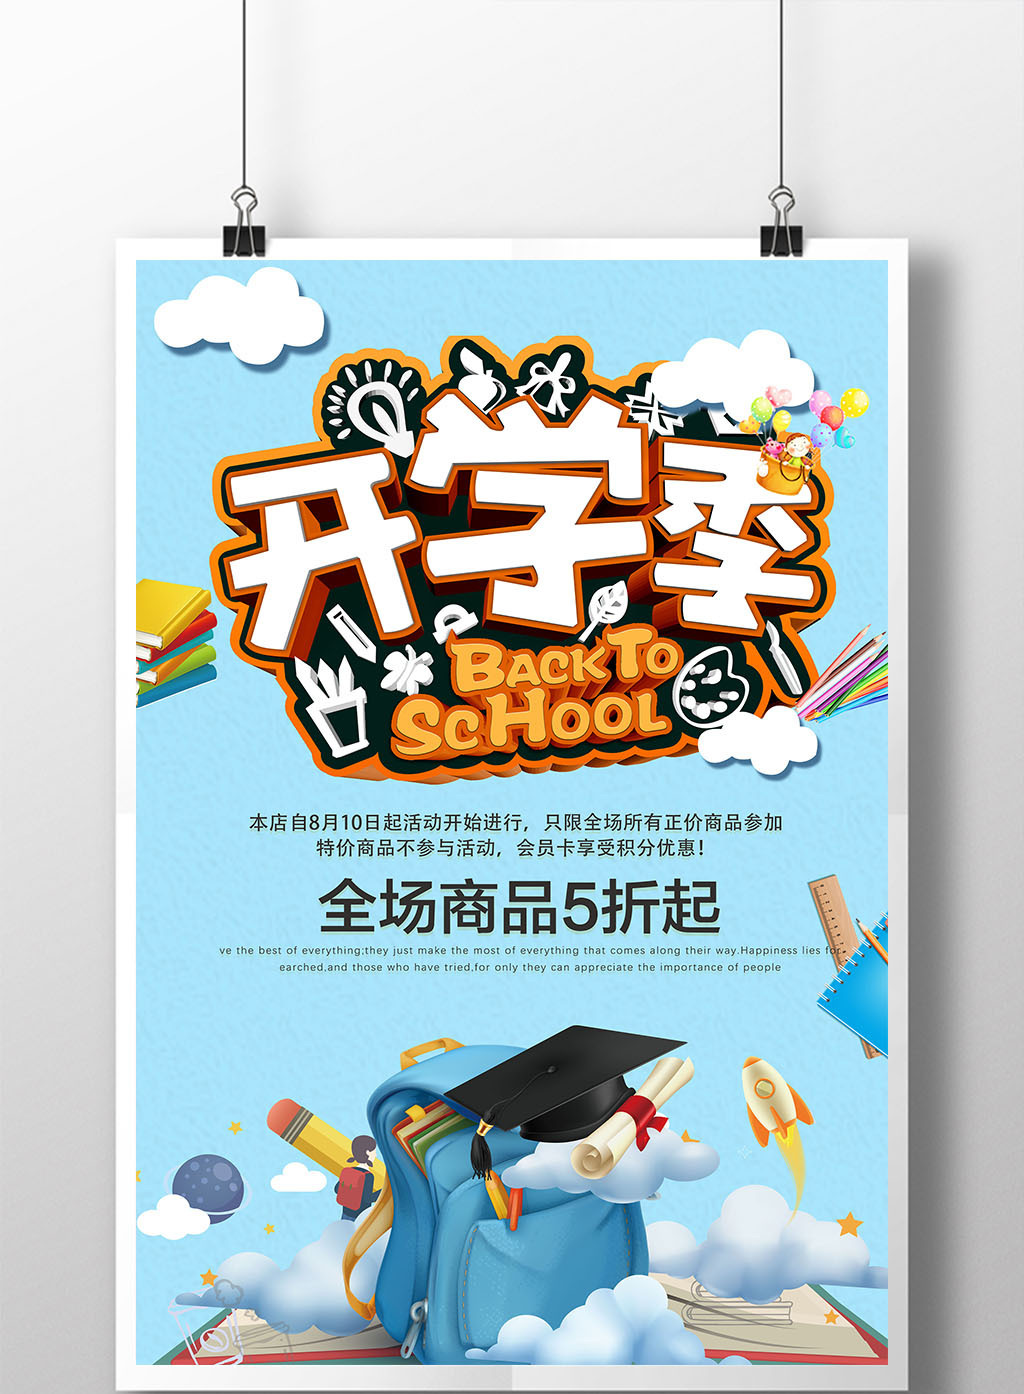 创意漫画风开学季促销海报模板免费下载 